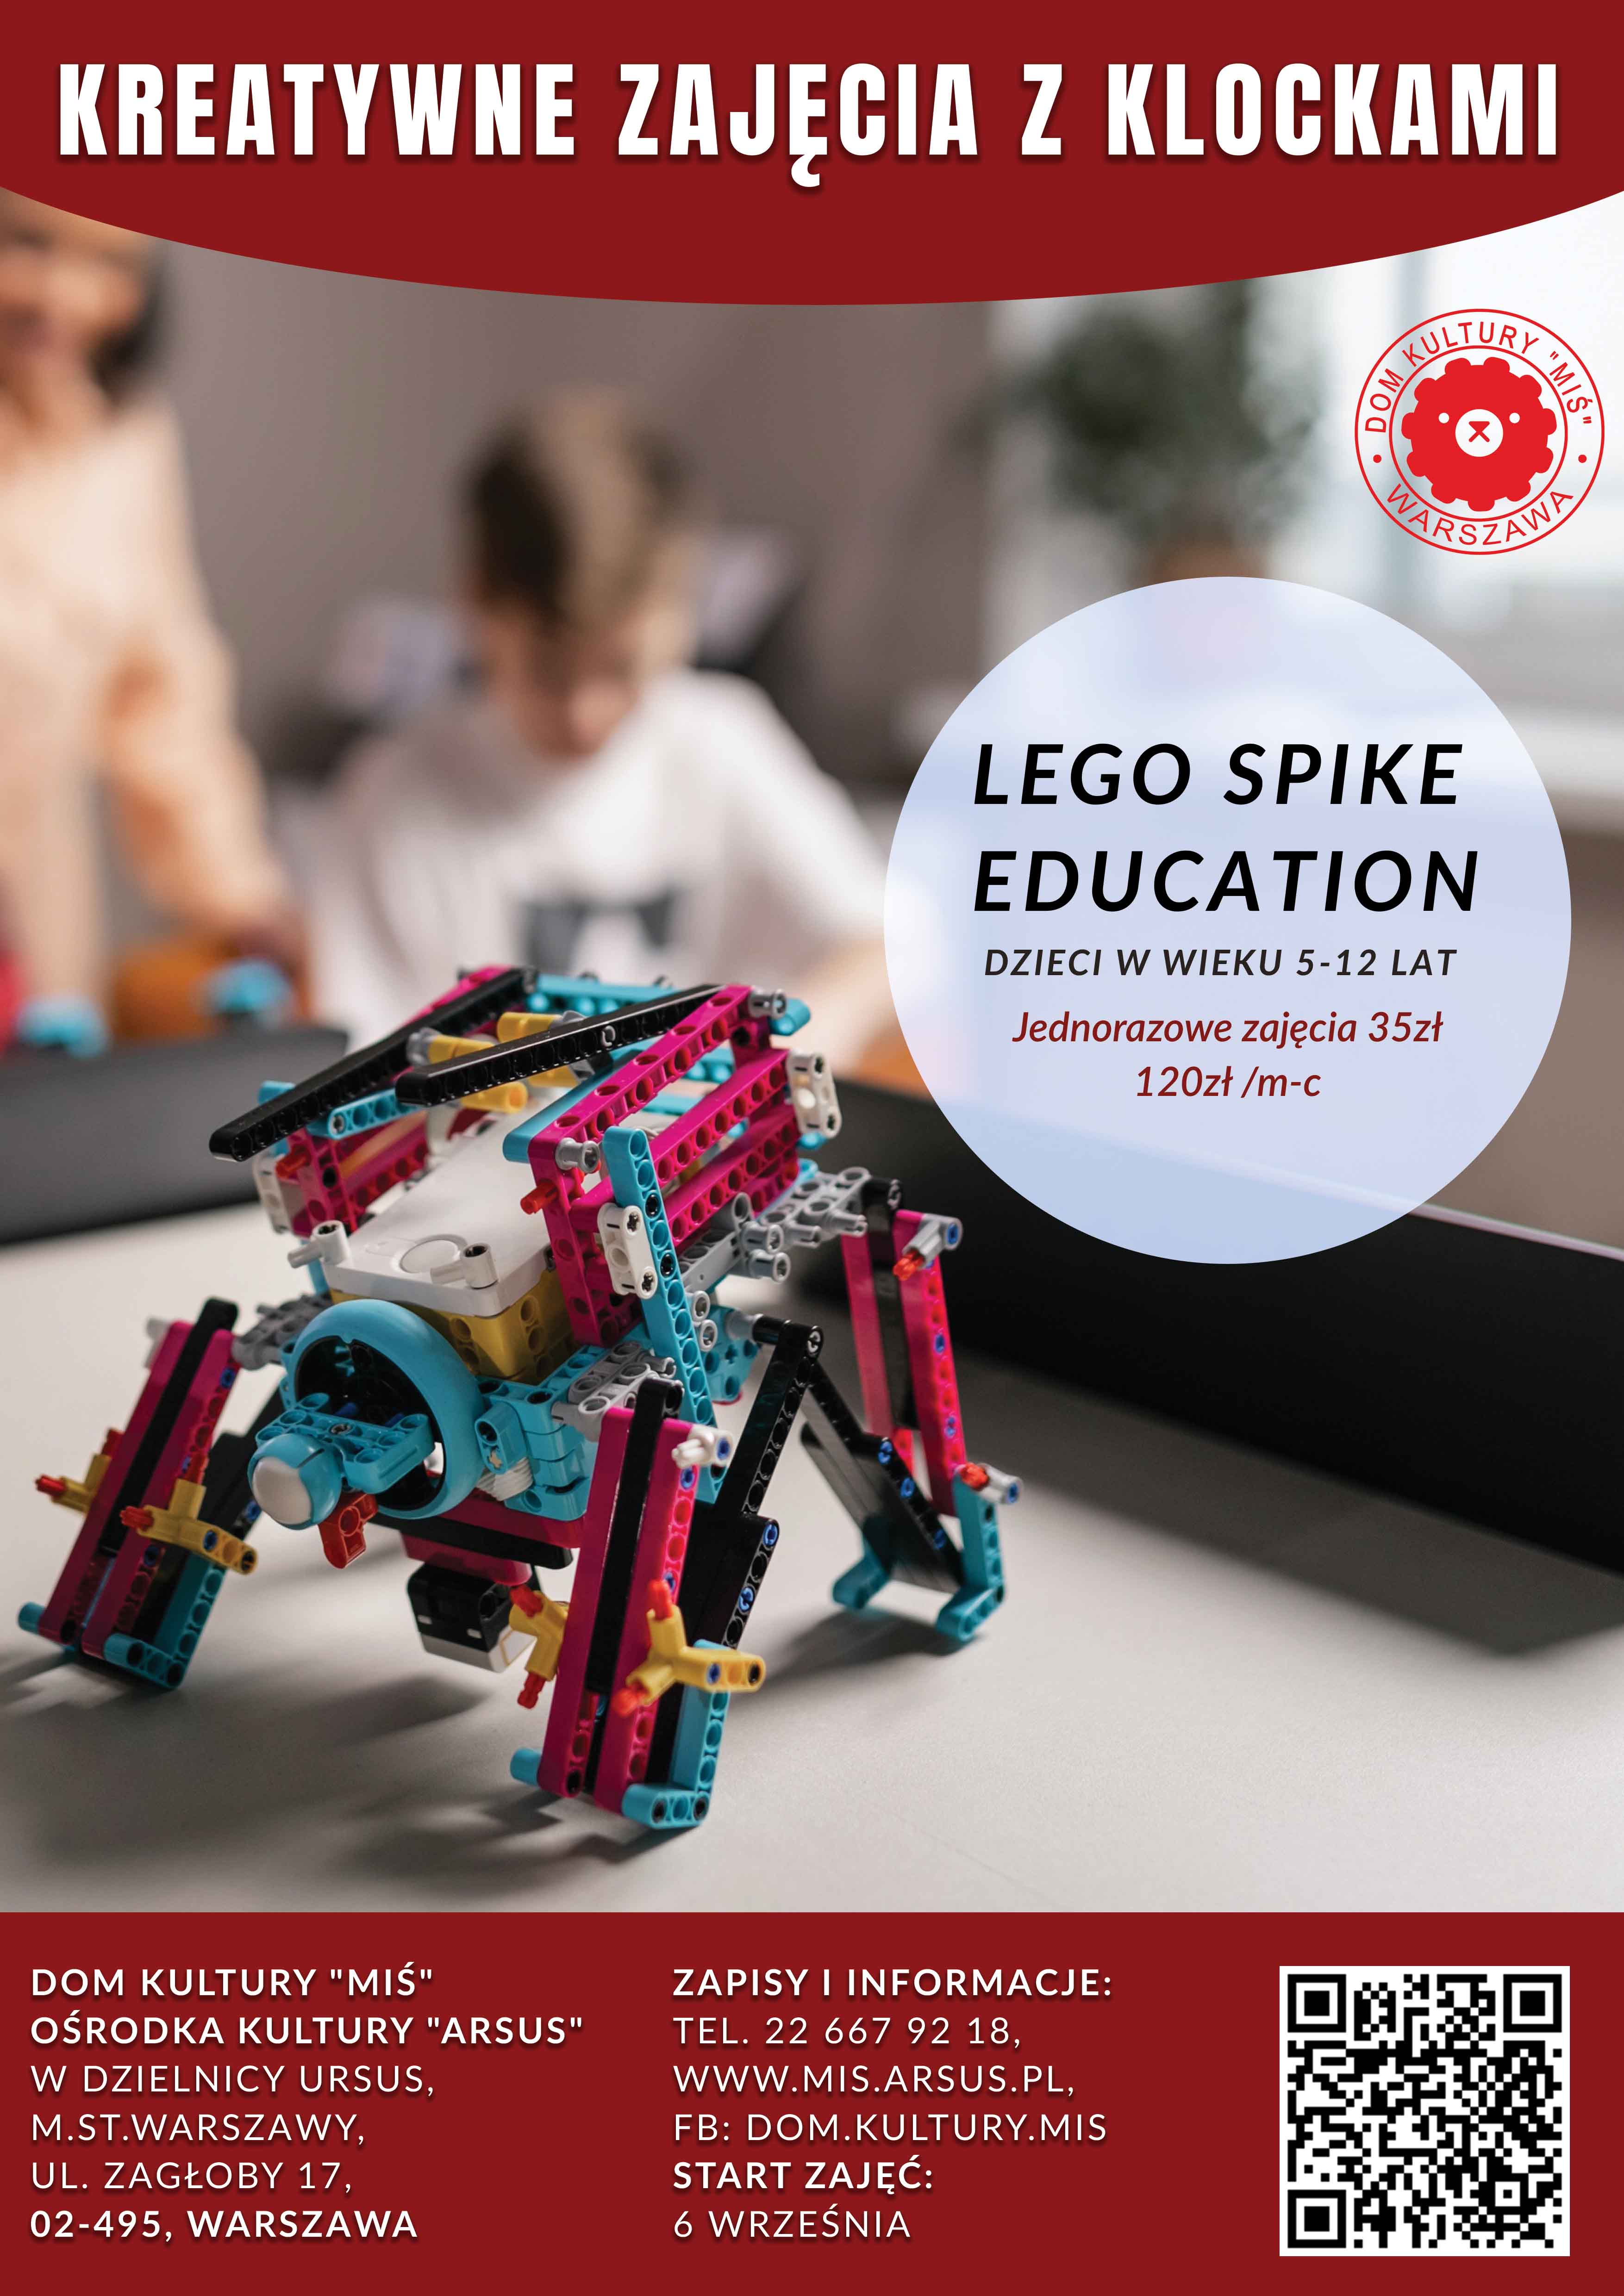 Zajęcia kreatywne z Klockami Lego Spike Education w Misiu